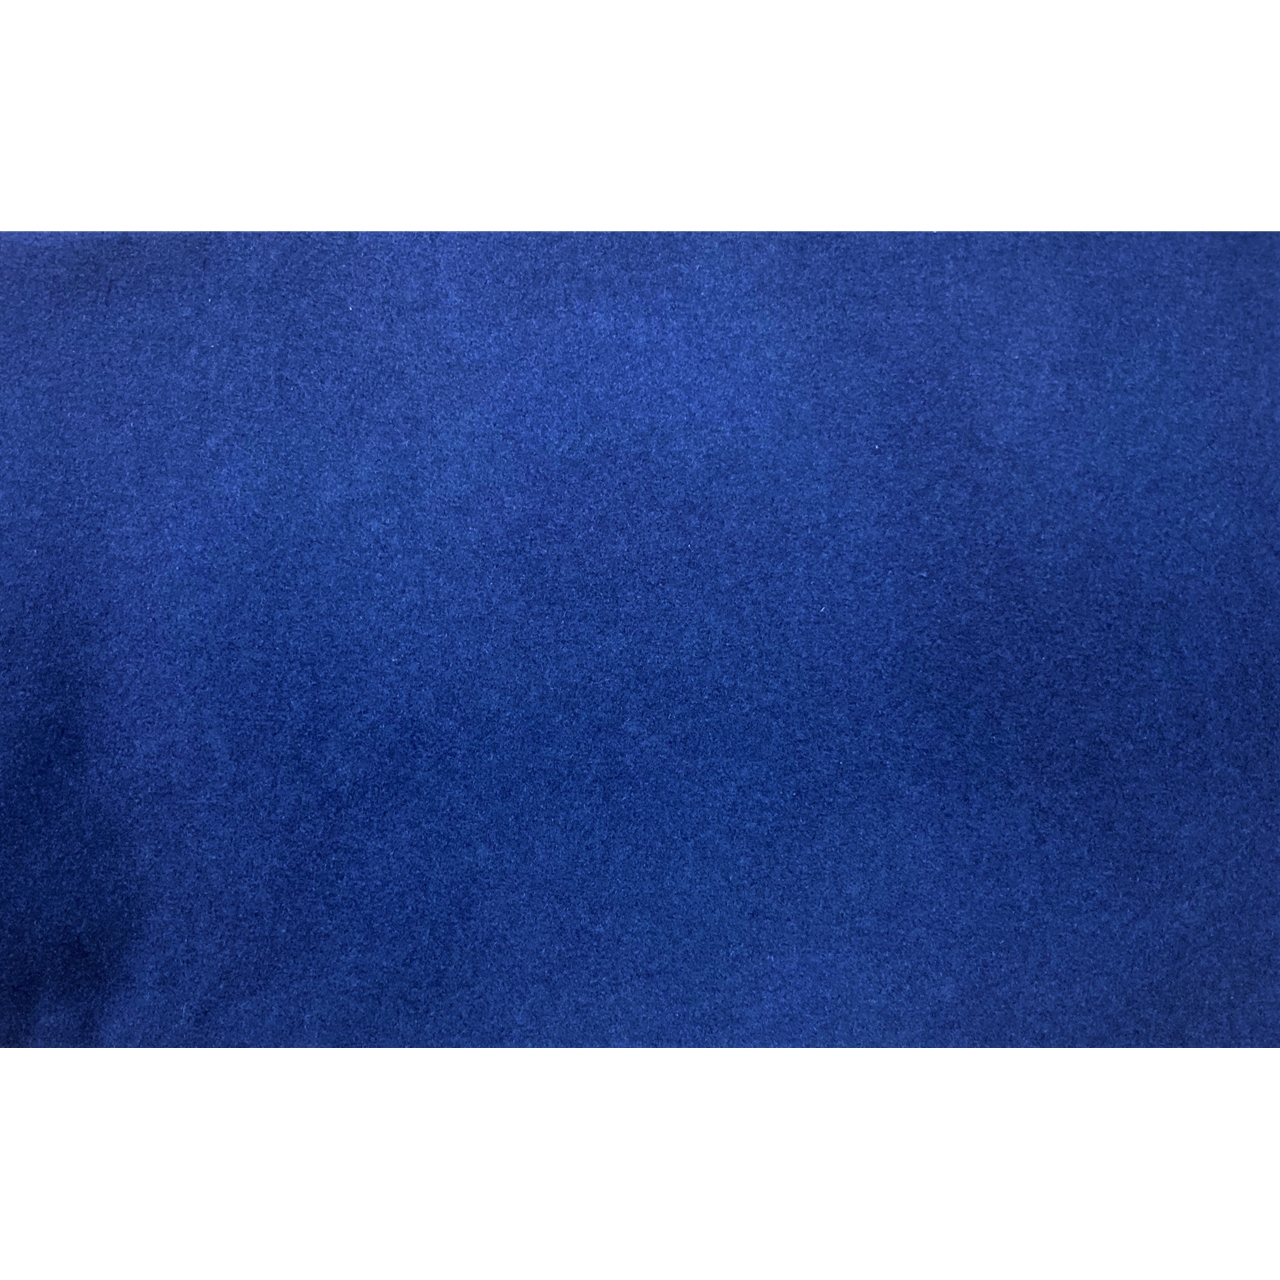 Blanket Viola Kofferetui blau